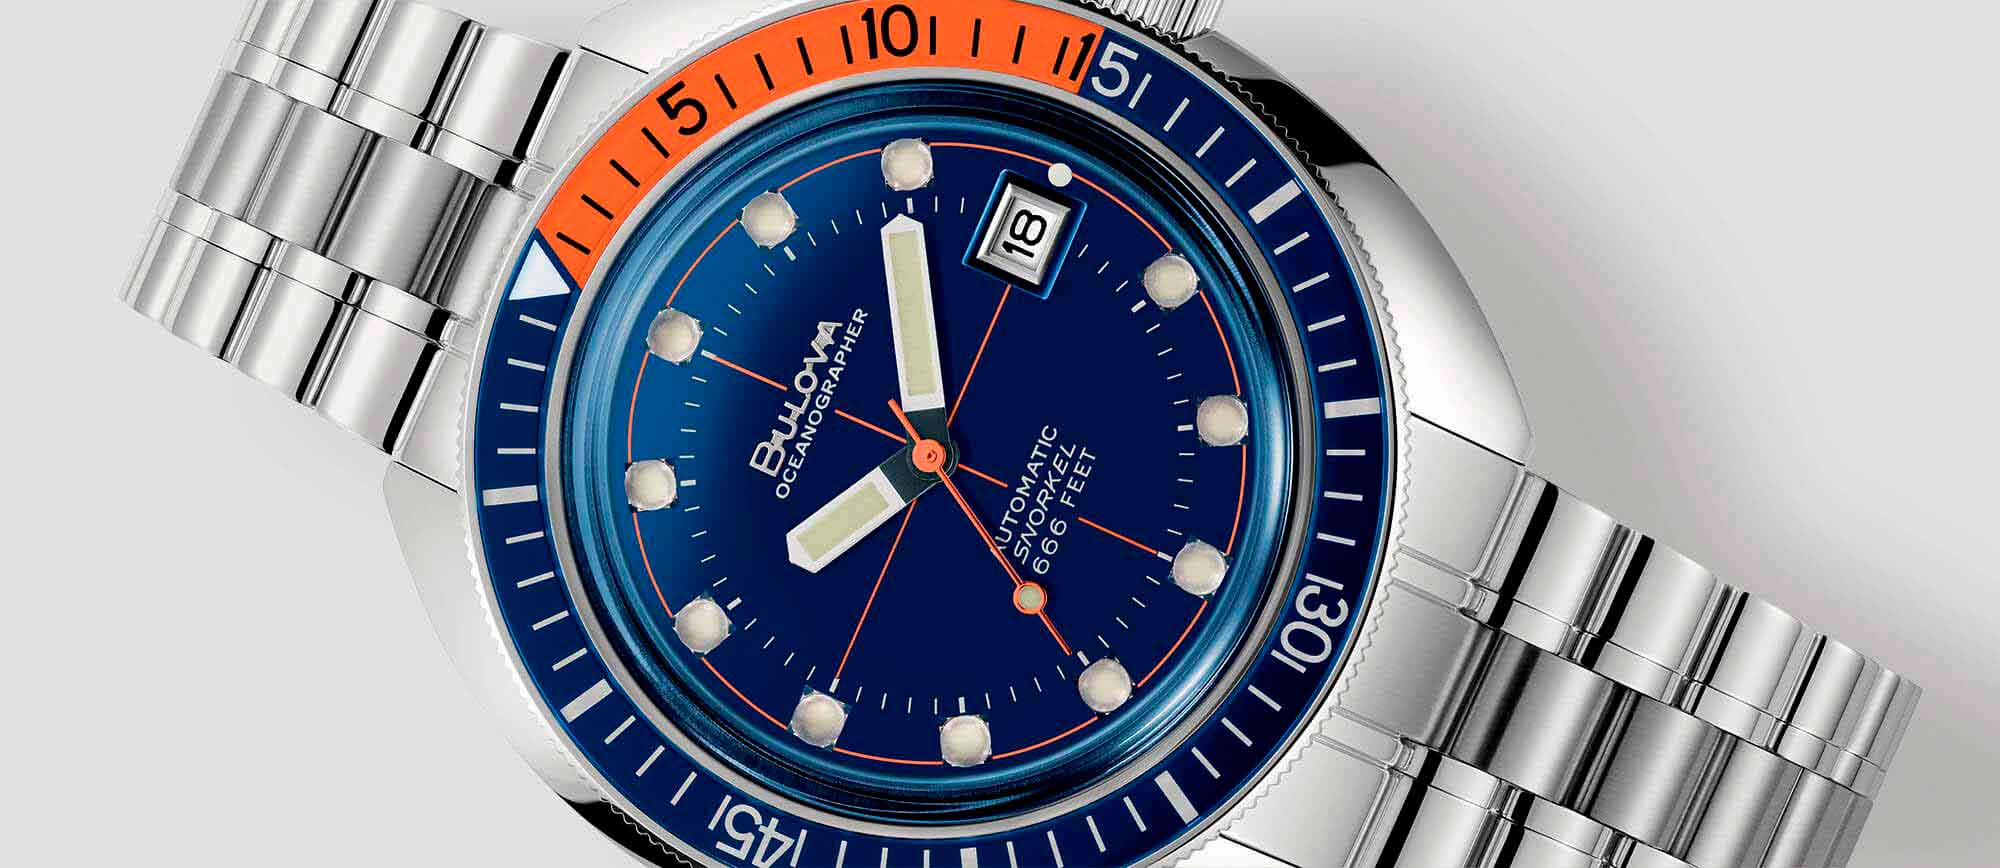 Reloj metálico de esfera azul con detalles en naranja de la colección Oceanographer "Devil Diver" de relojes Bulova, un homenaje al buceo de profundidad. Relojes resistentes al agua.